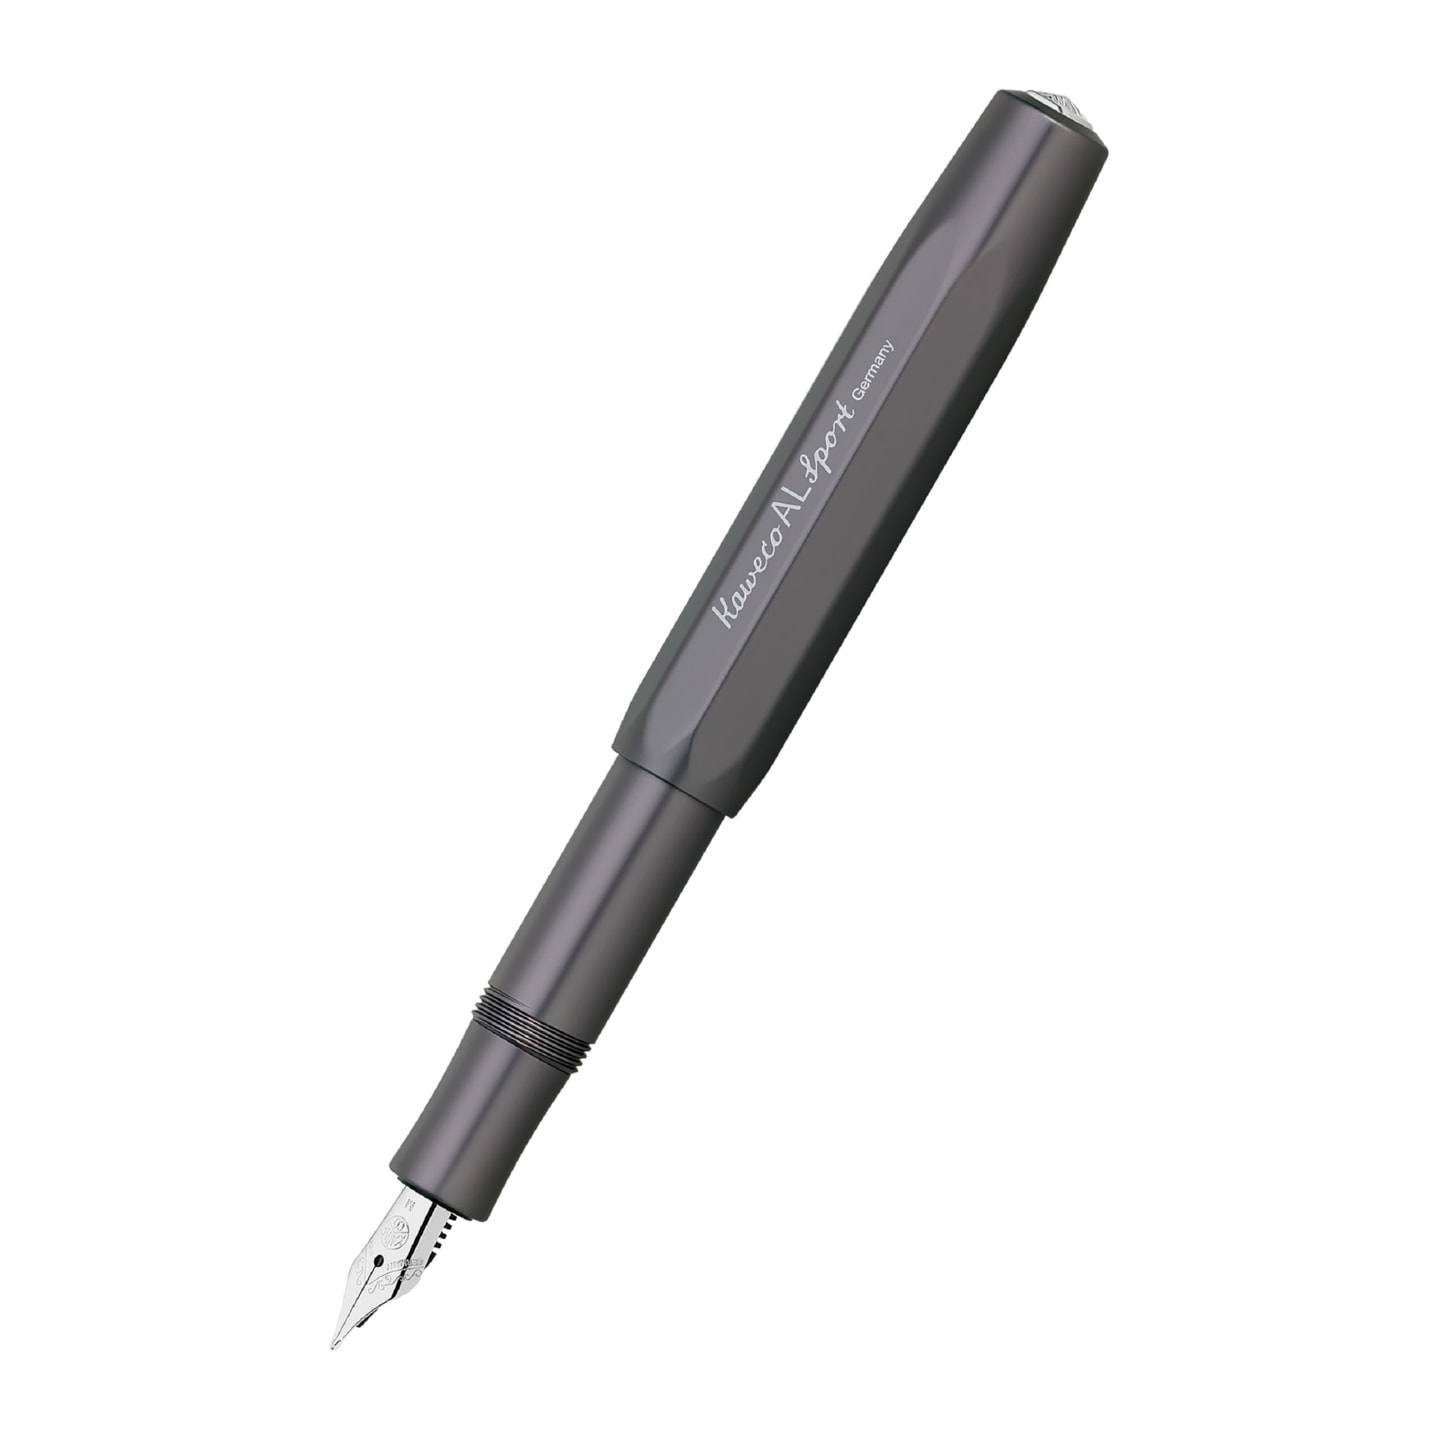 Ручка перьевая KAWECO AL Sport антрацитовый 4 варианта пера